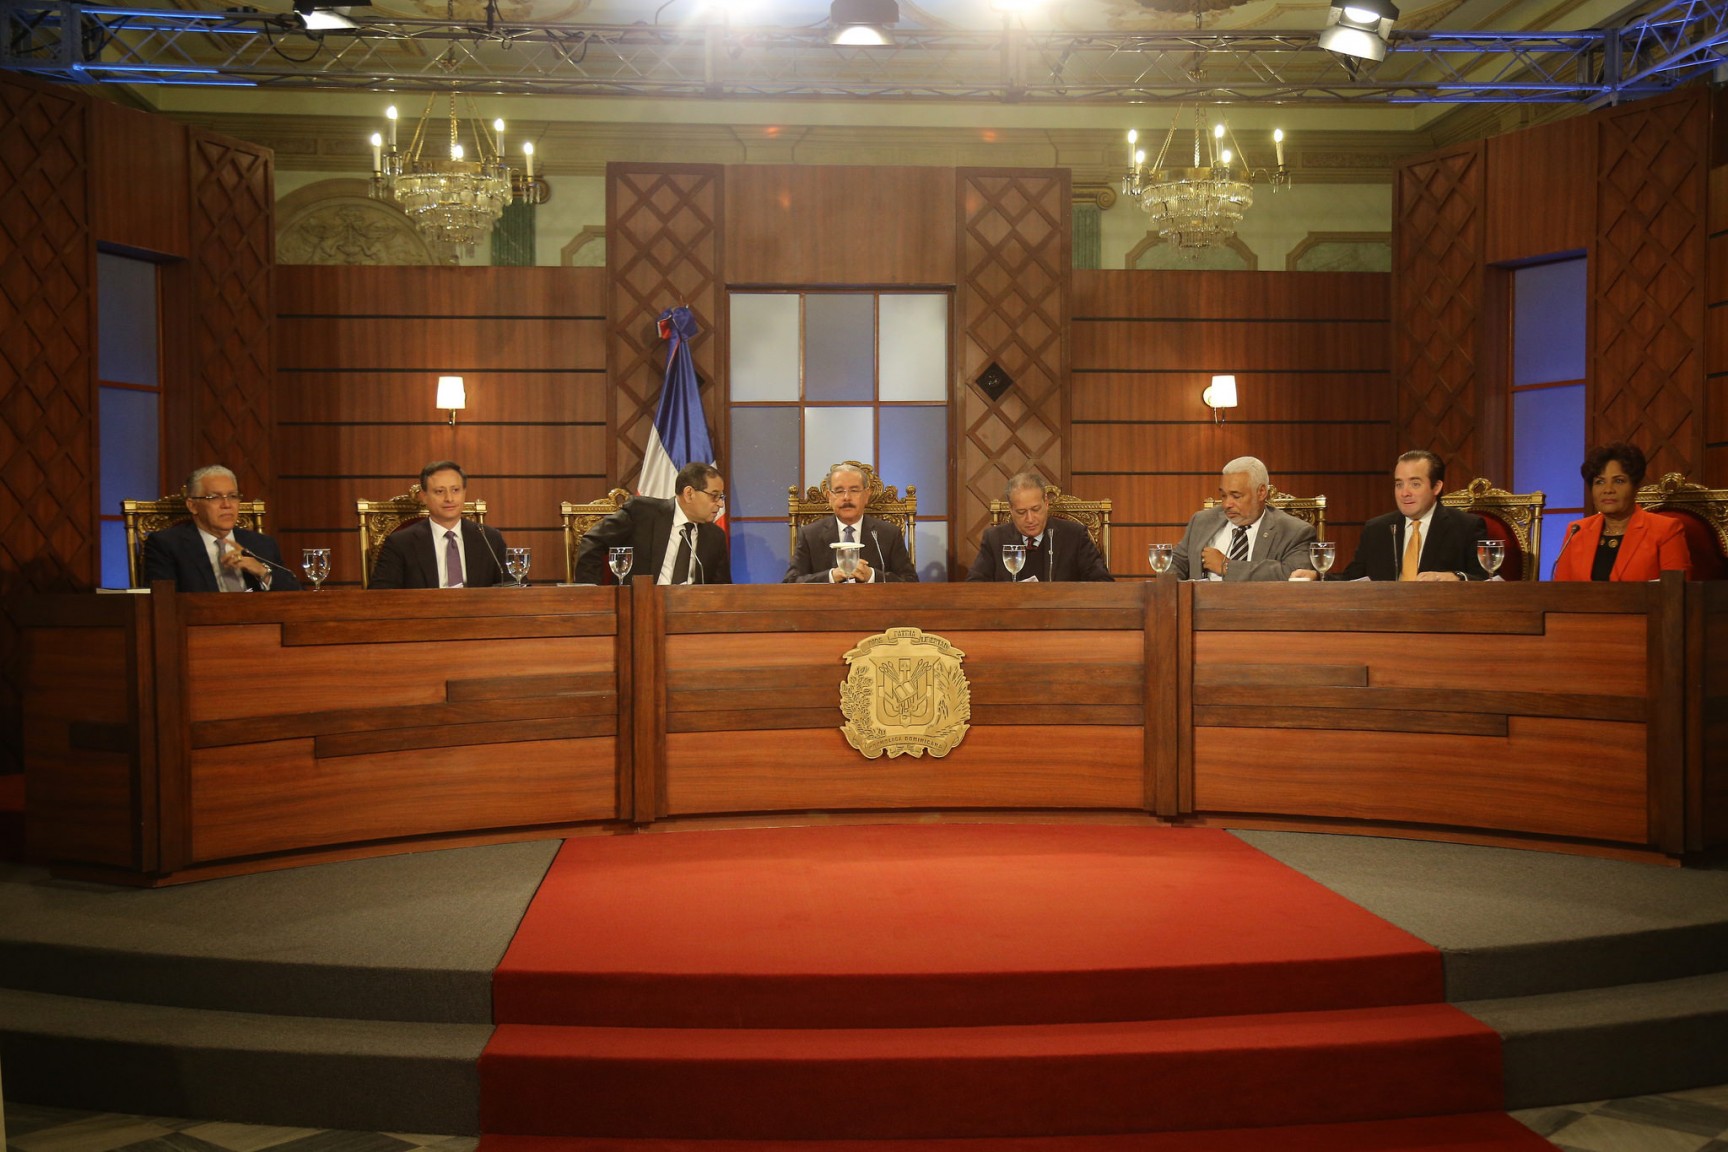 REPÚBLICA DOMINICANA: Consejo Nacional Magistratura concluye entrevistas aspirantes TC; deliberará próximo lunes